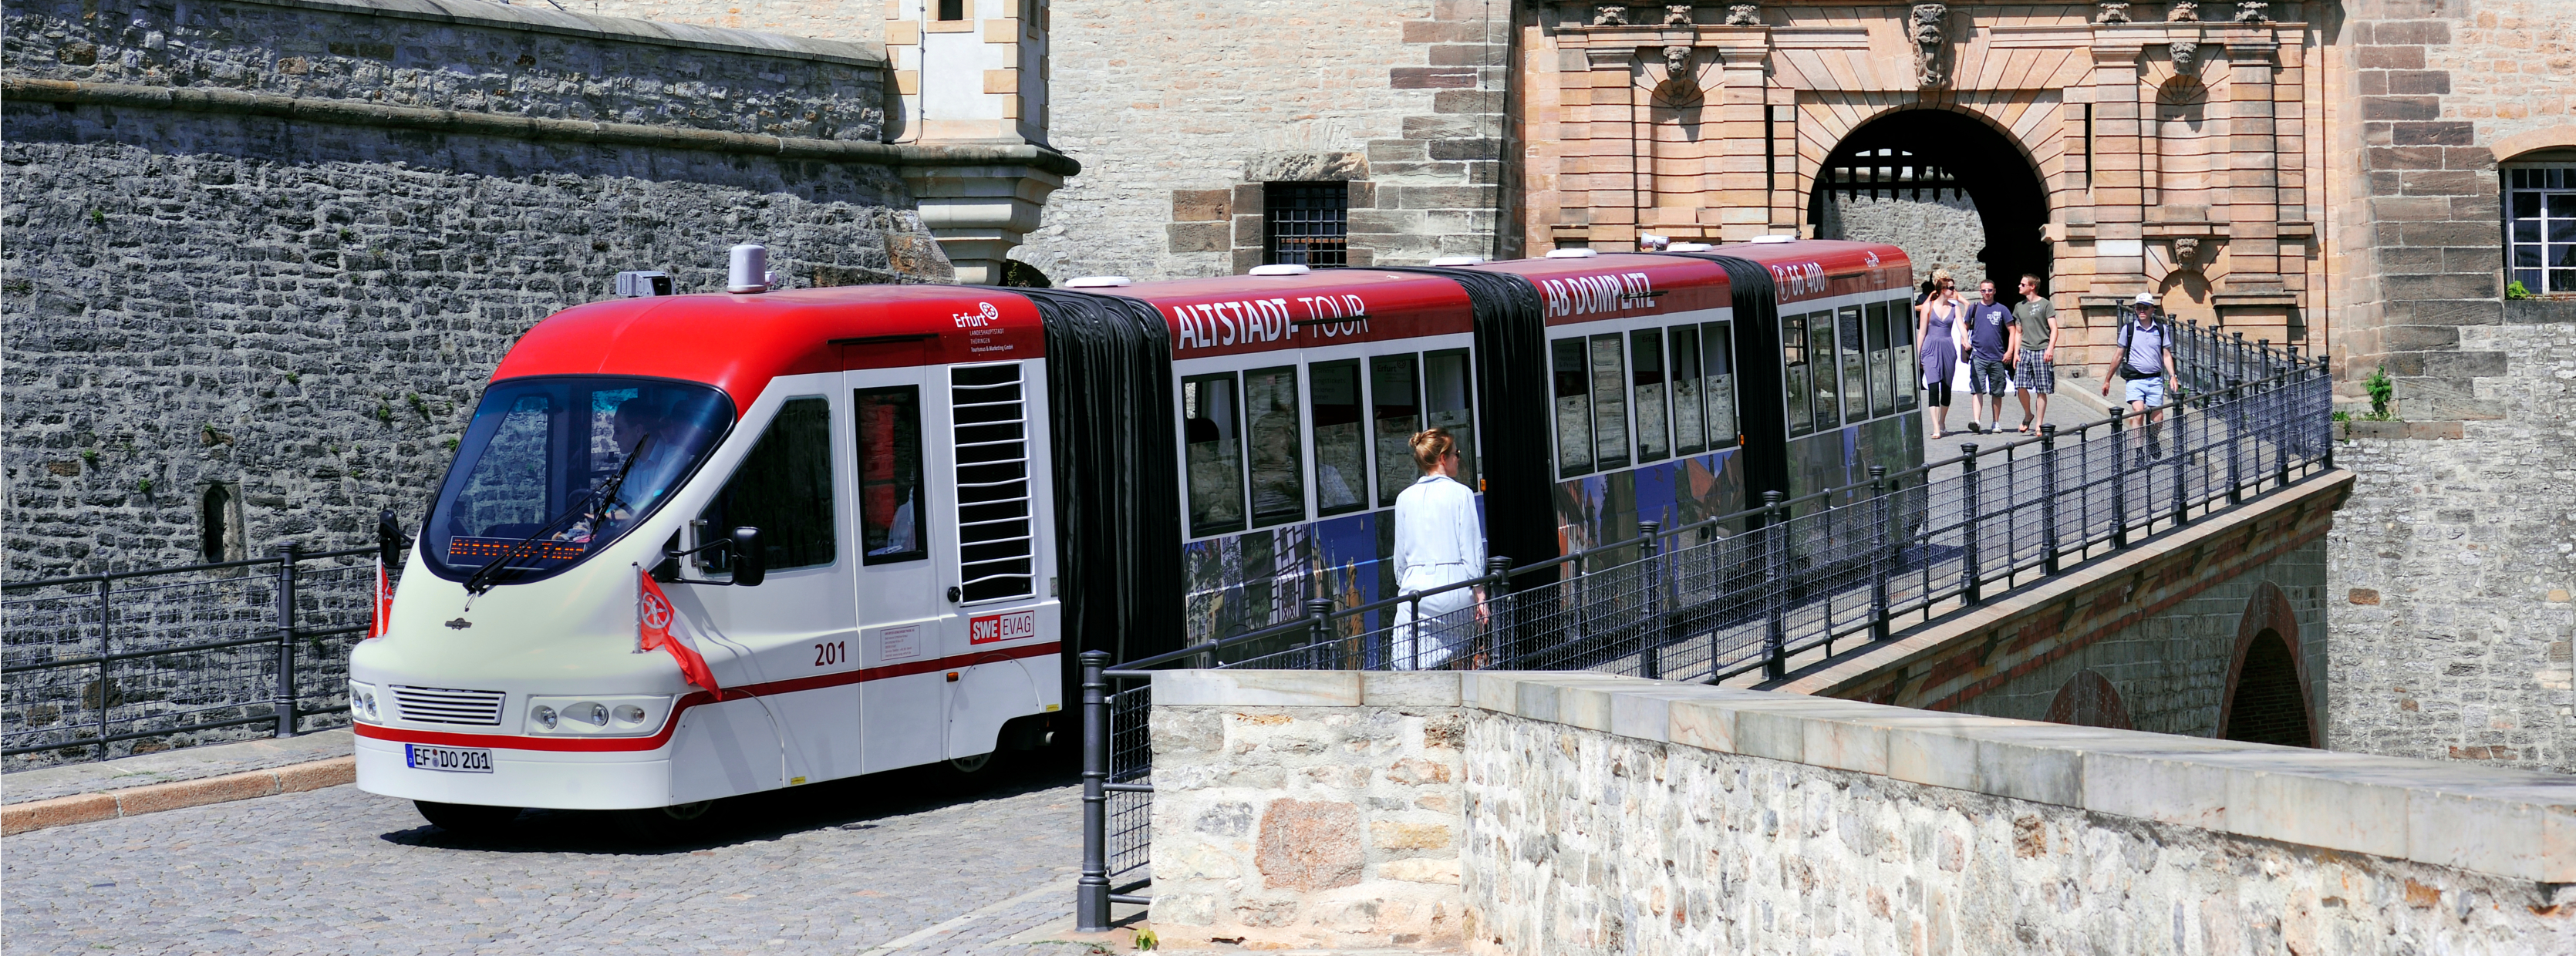 Altstadt-Express auf dem Petersberg